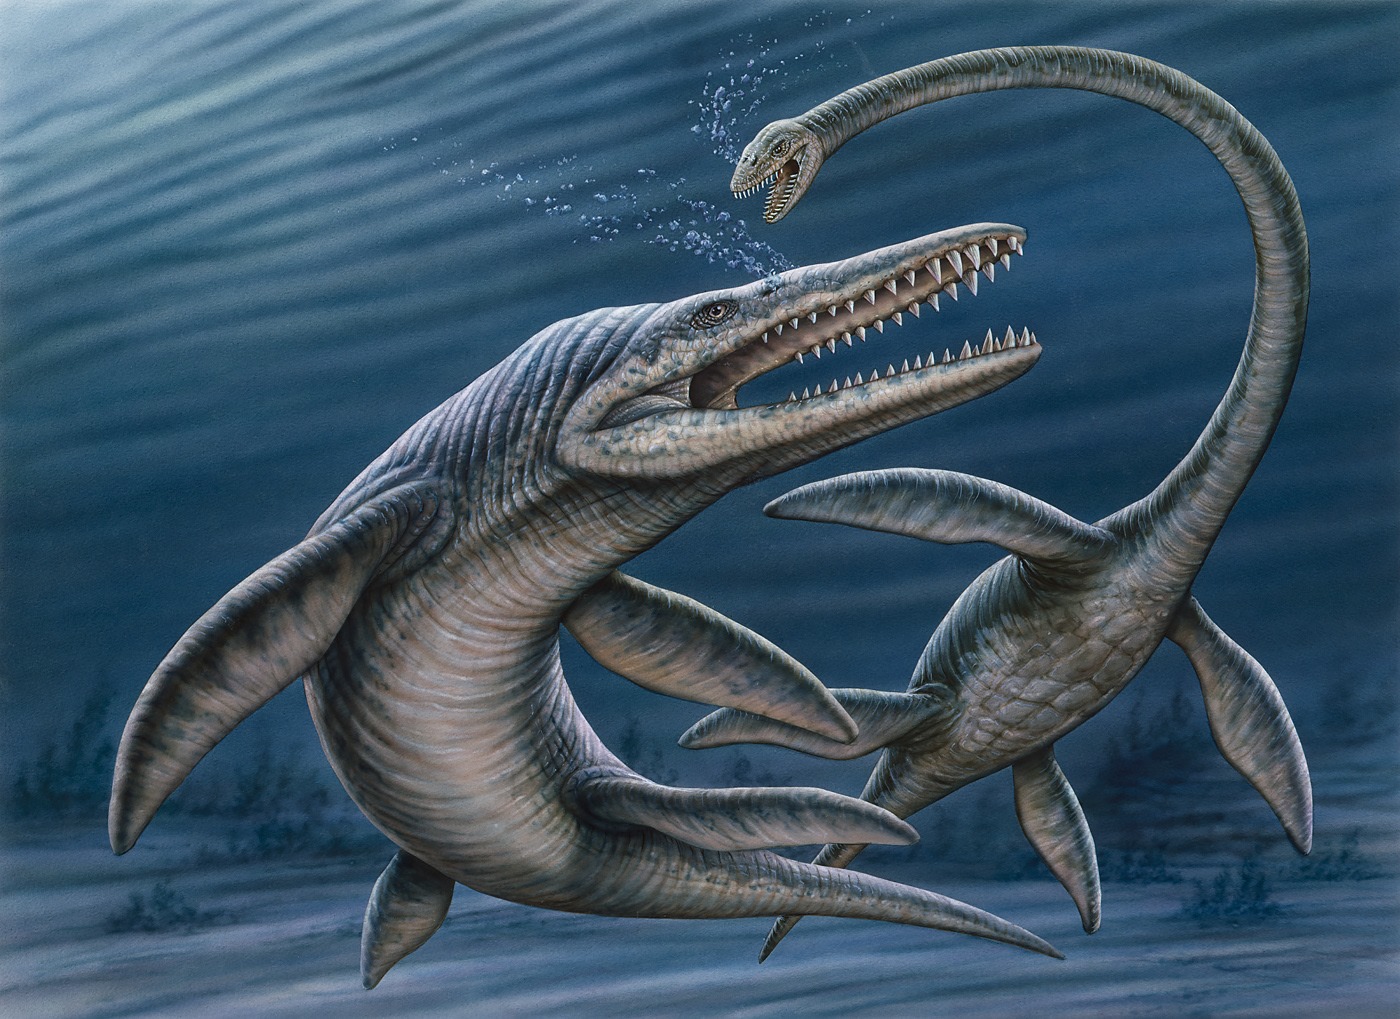 Kronosaurus queenslandicus attacks an Elasmosaurus